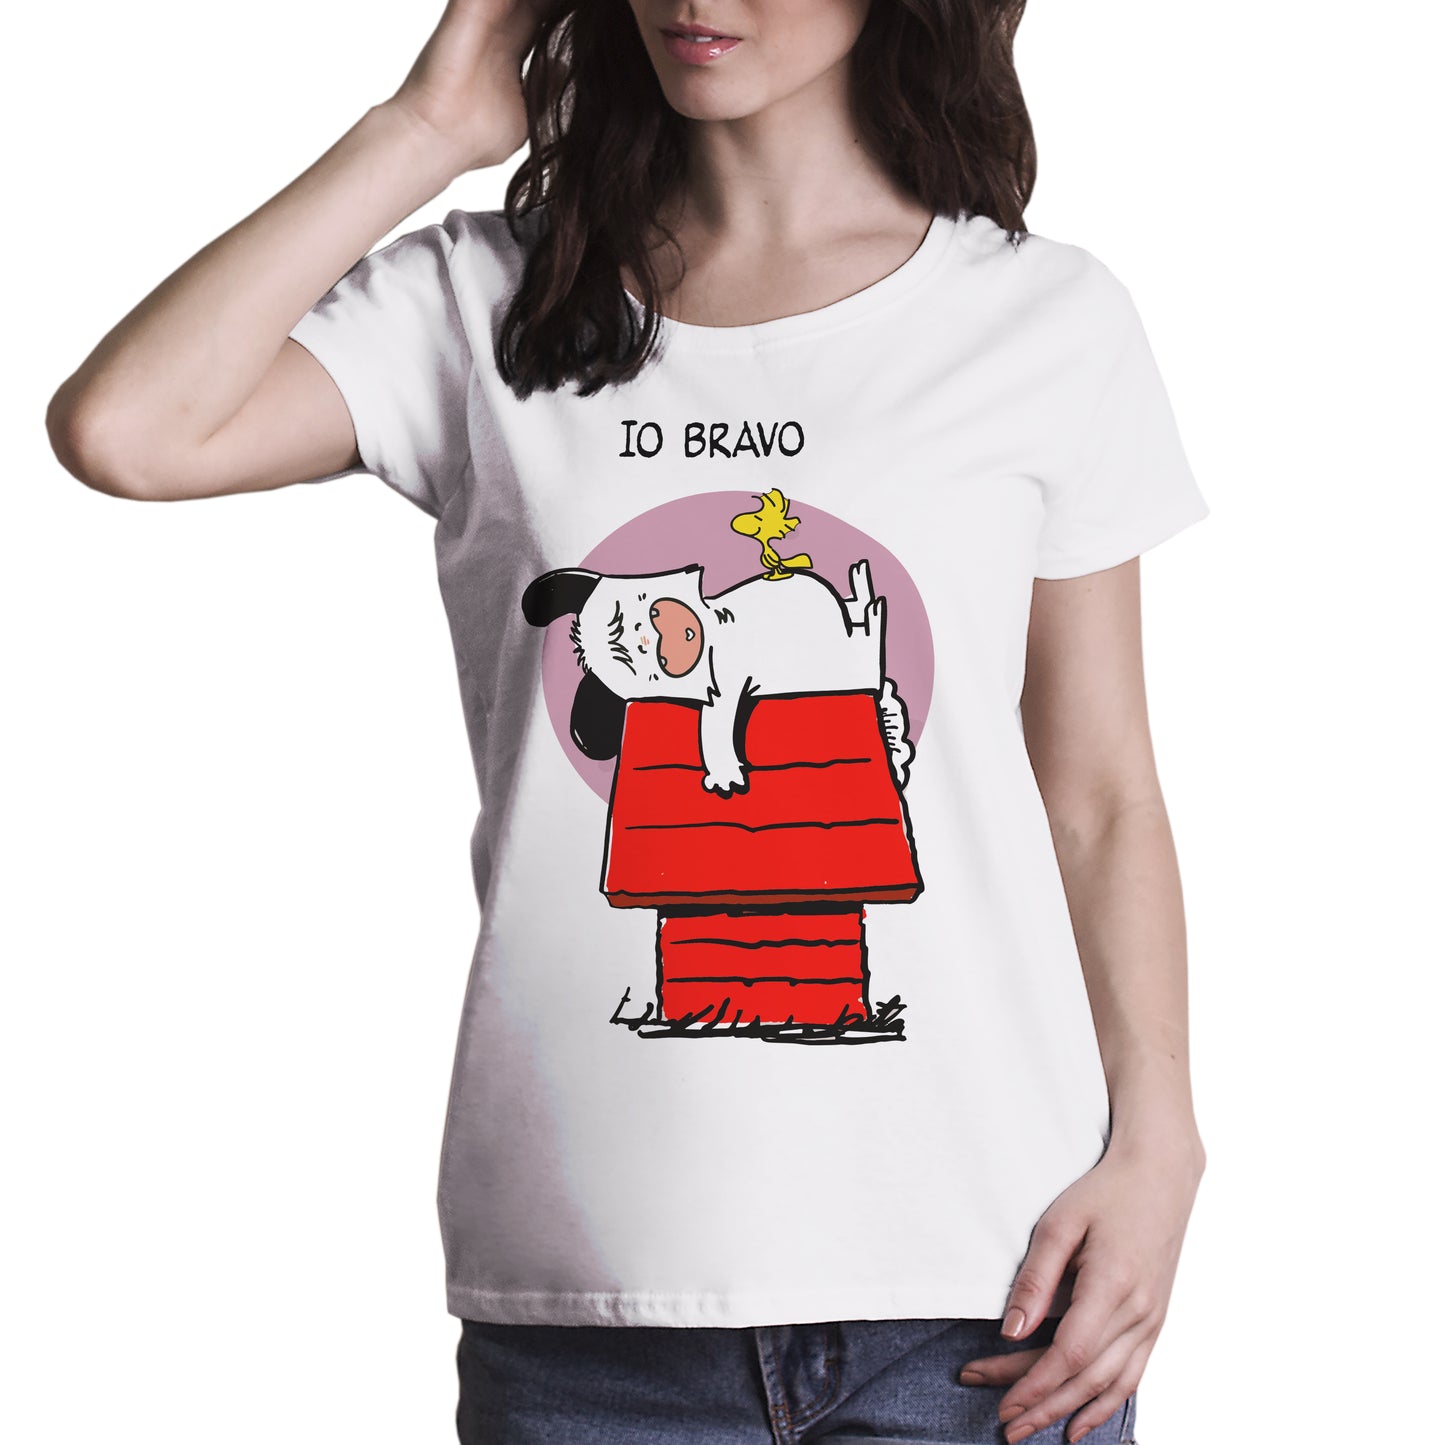 Firebrick T-Shirt Spank like Snoopy - Rivisitazione simpatica del cartone animato anni 80 -  Chooseurcolor CucShop